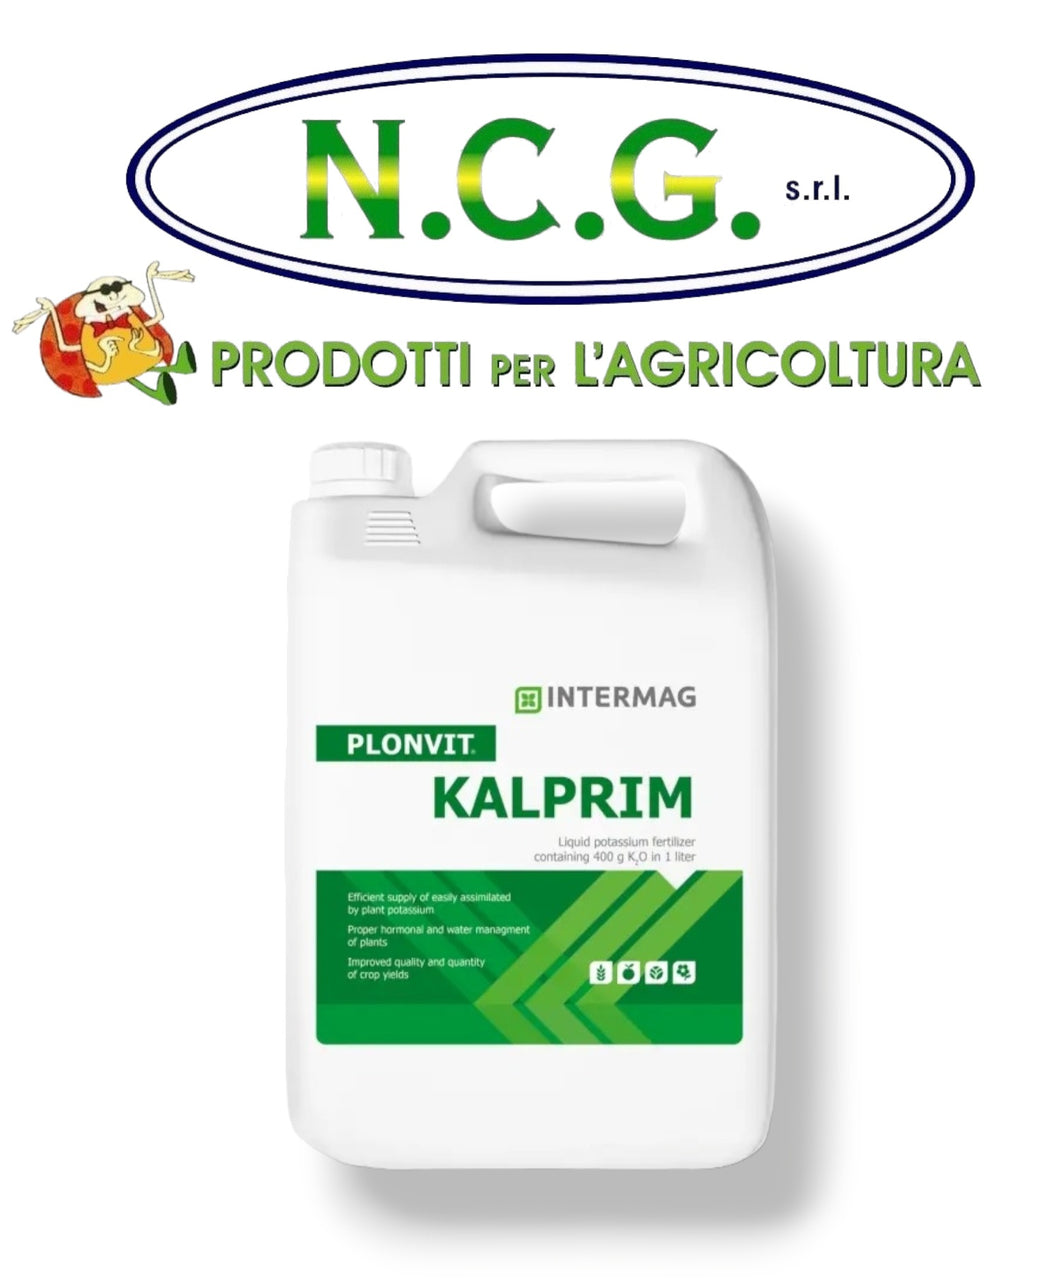 Plonvit Kalprim Intermag da kg 7,4 Fertilizzante liquido al potassio con 400 g di K2O in 1 litro